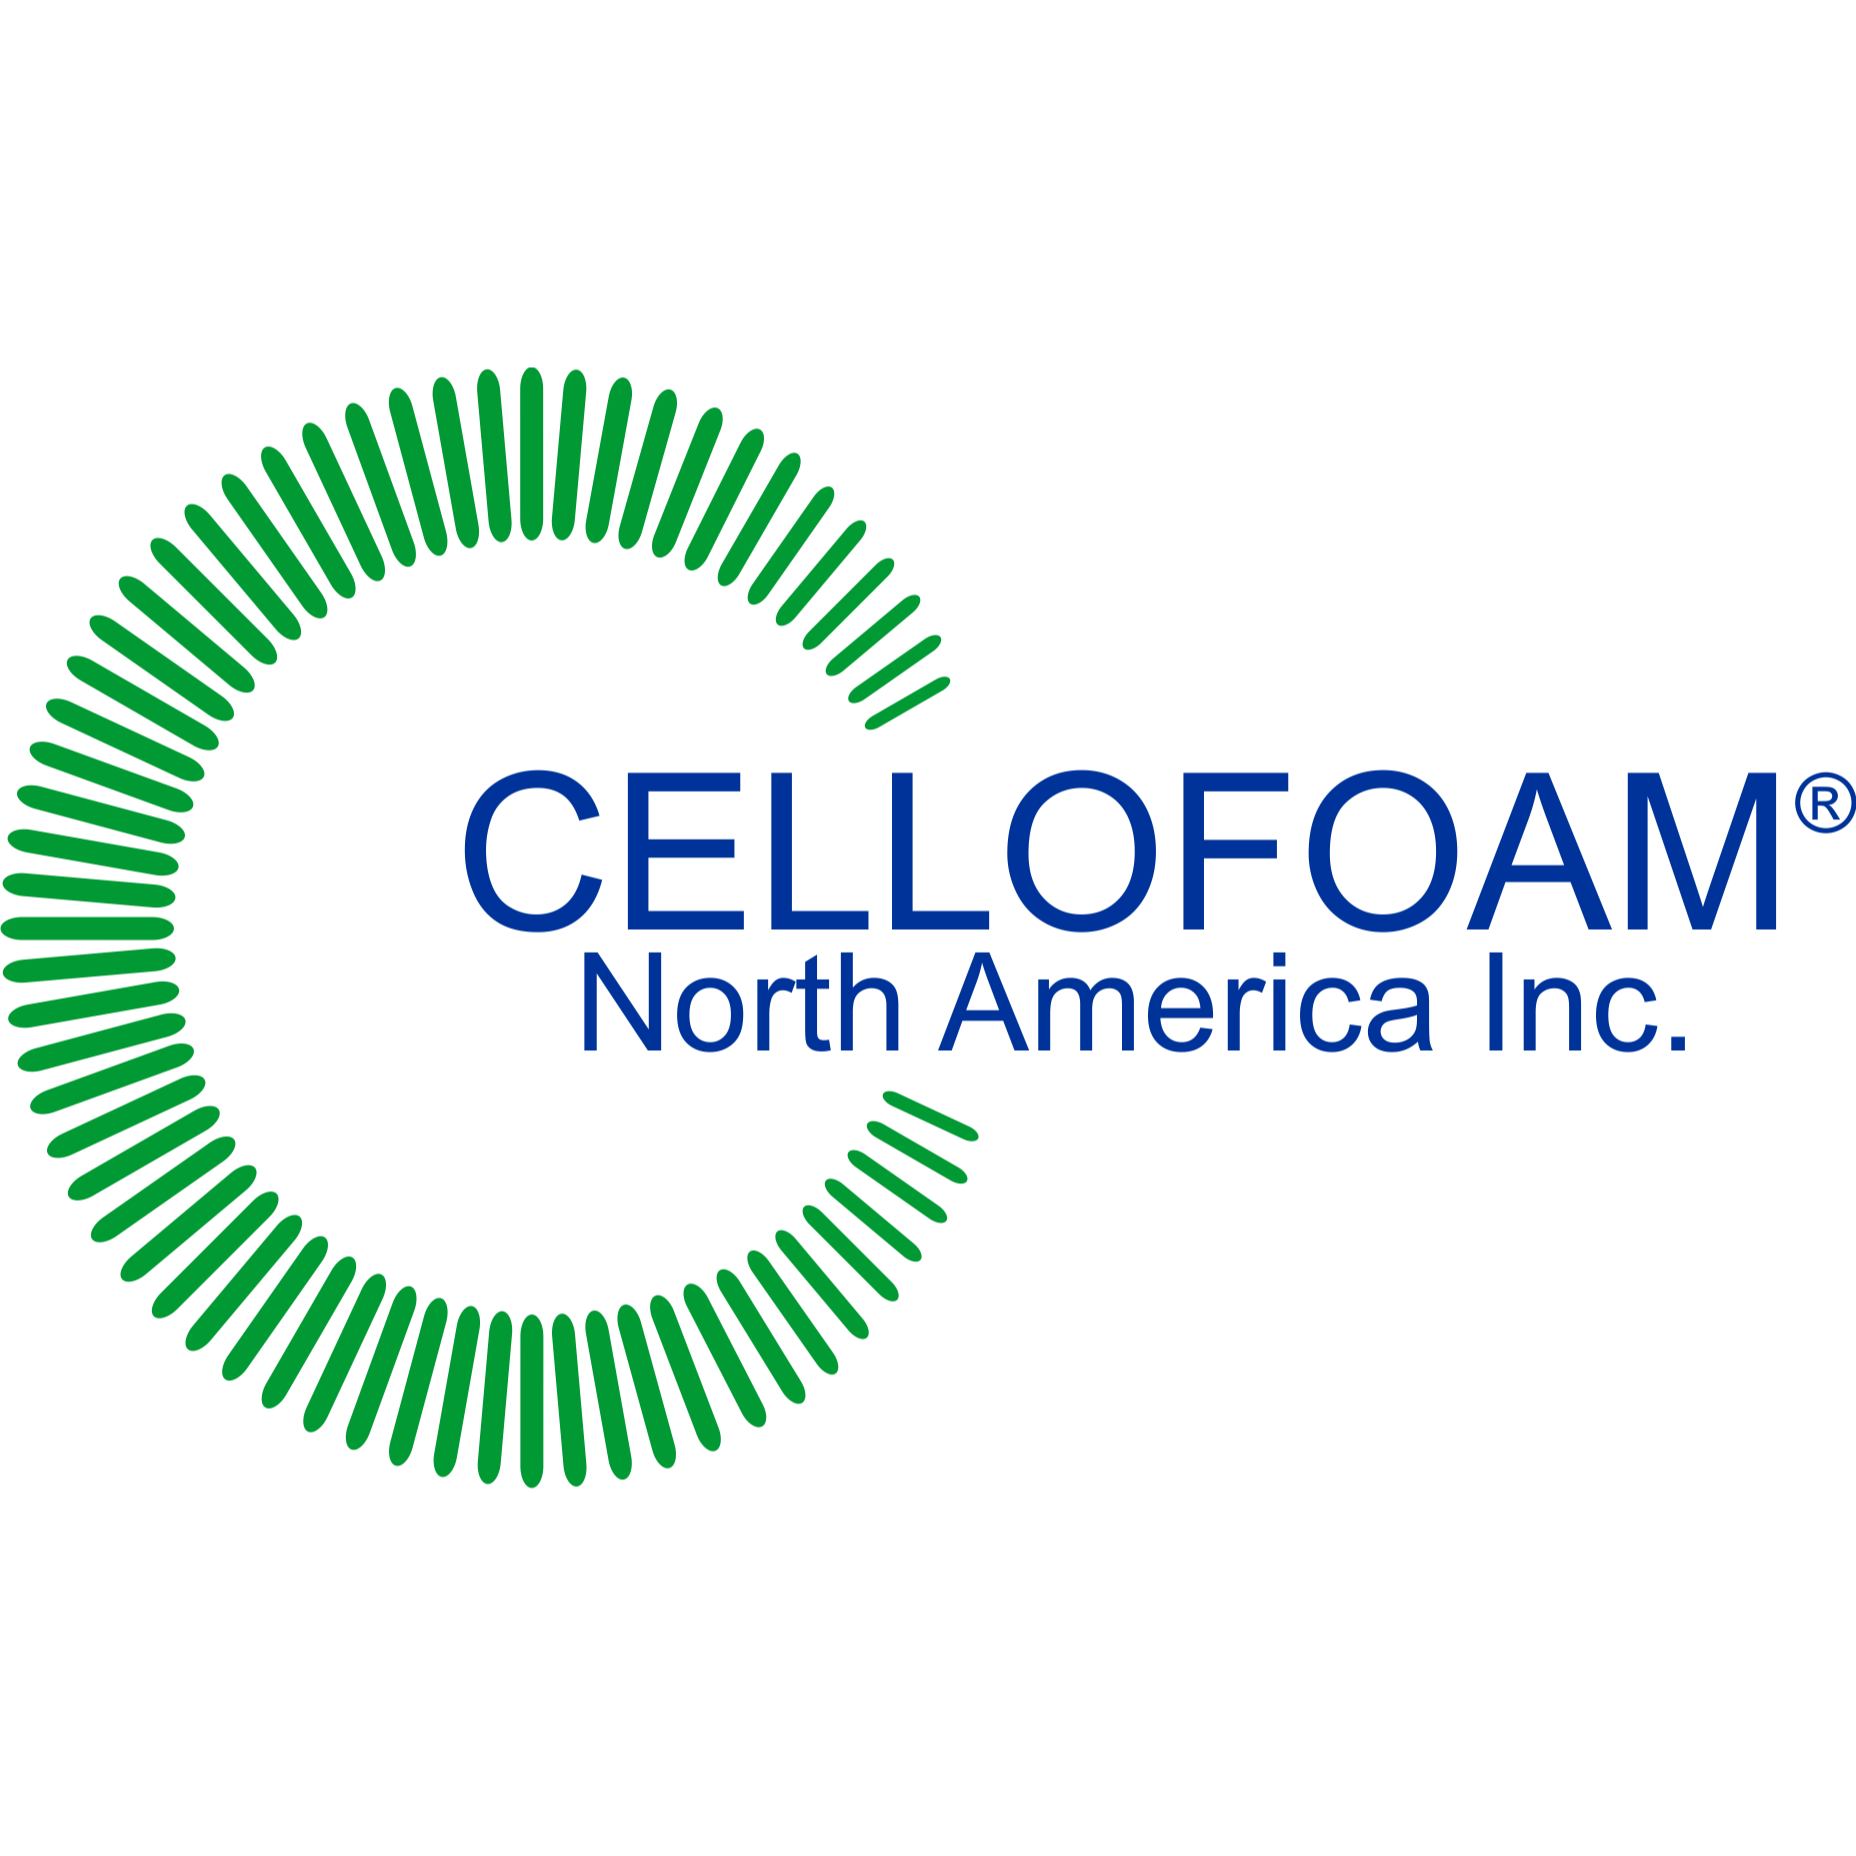 Cellofoam North America Inc.